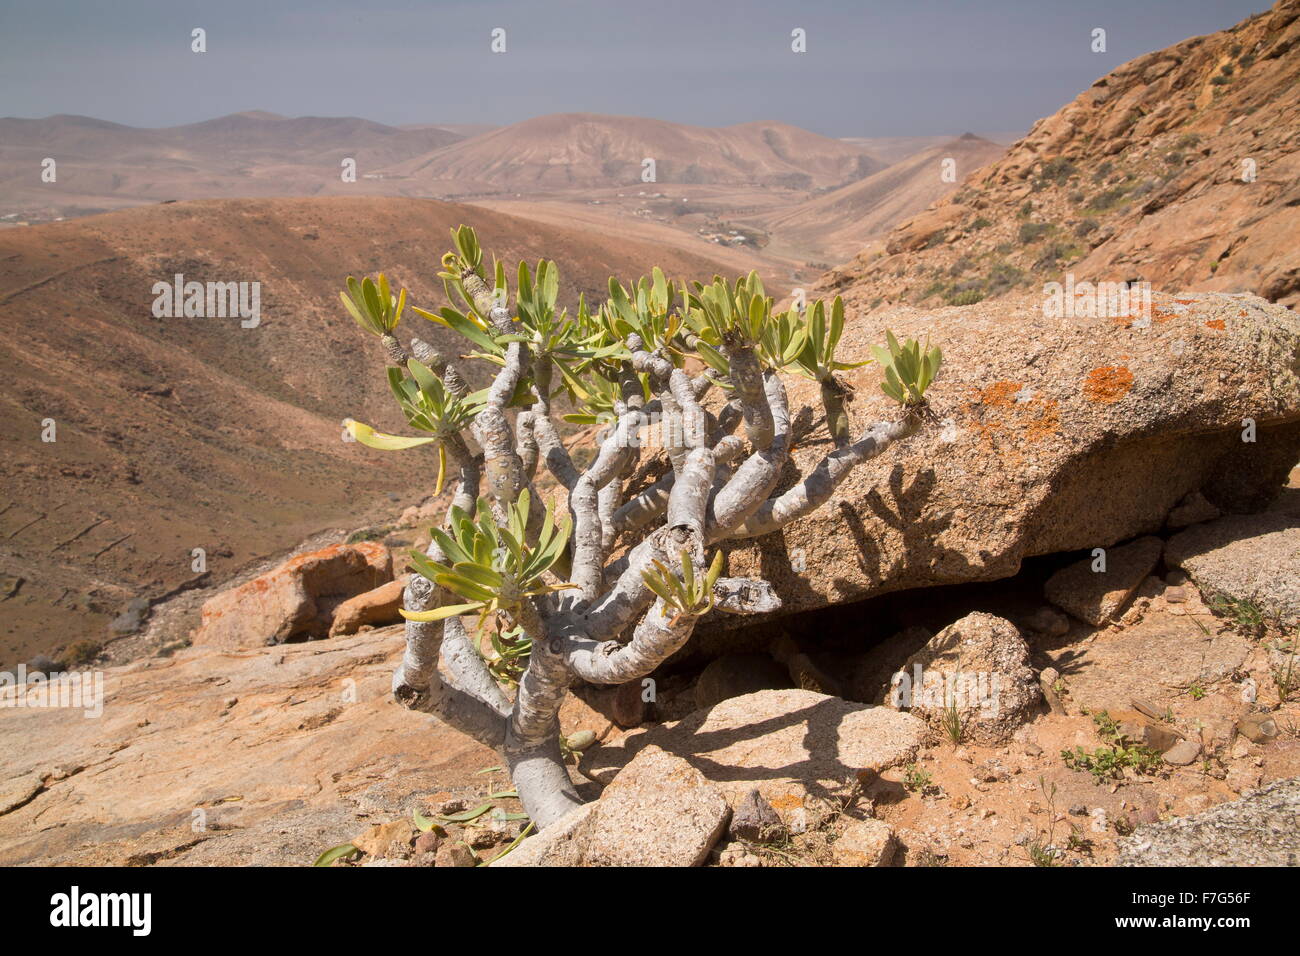 Verode, verodes neriifolia, en semi-hábitat del desierto, Fuerteventura, Foto de stock